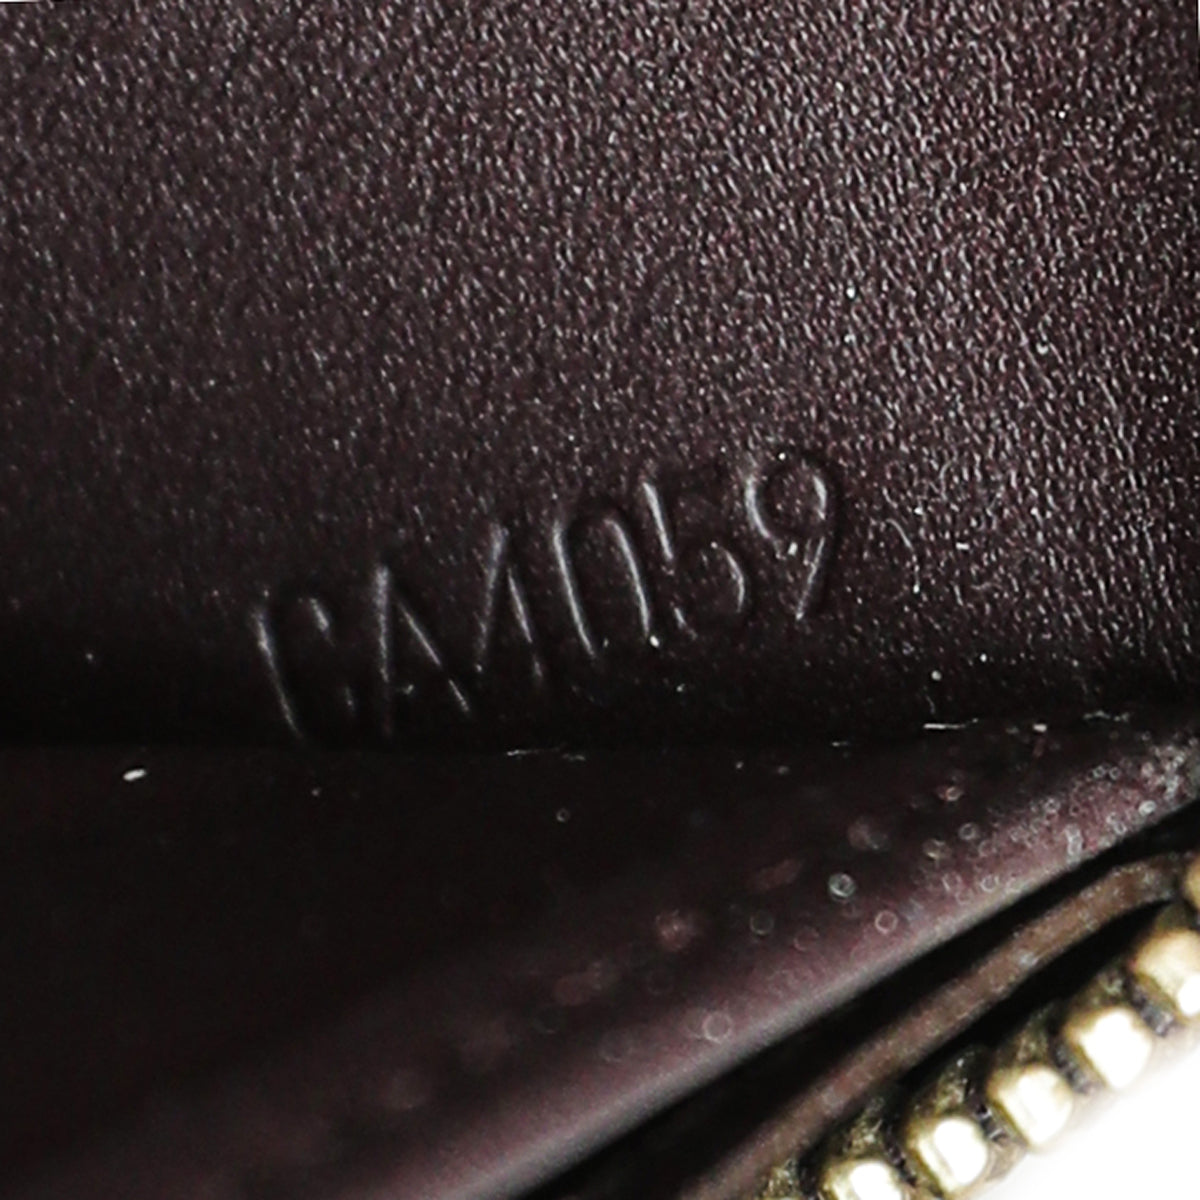 Authentic Louis Vuitton Amarante Monogram Vernis Leather Zippy Wallet  CA3112